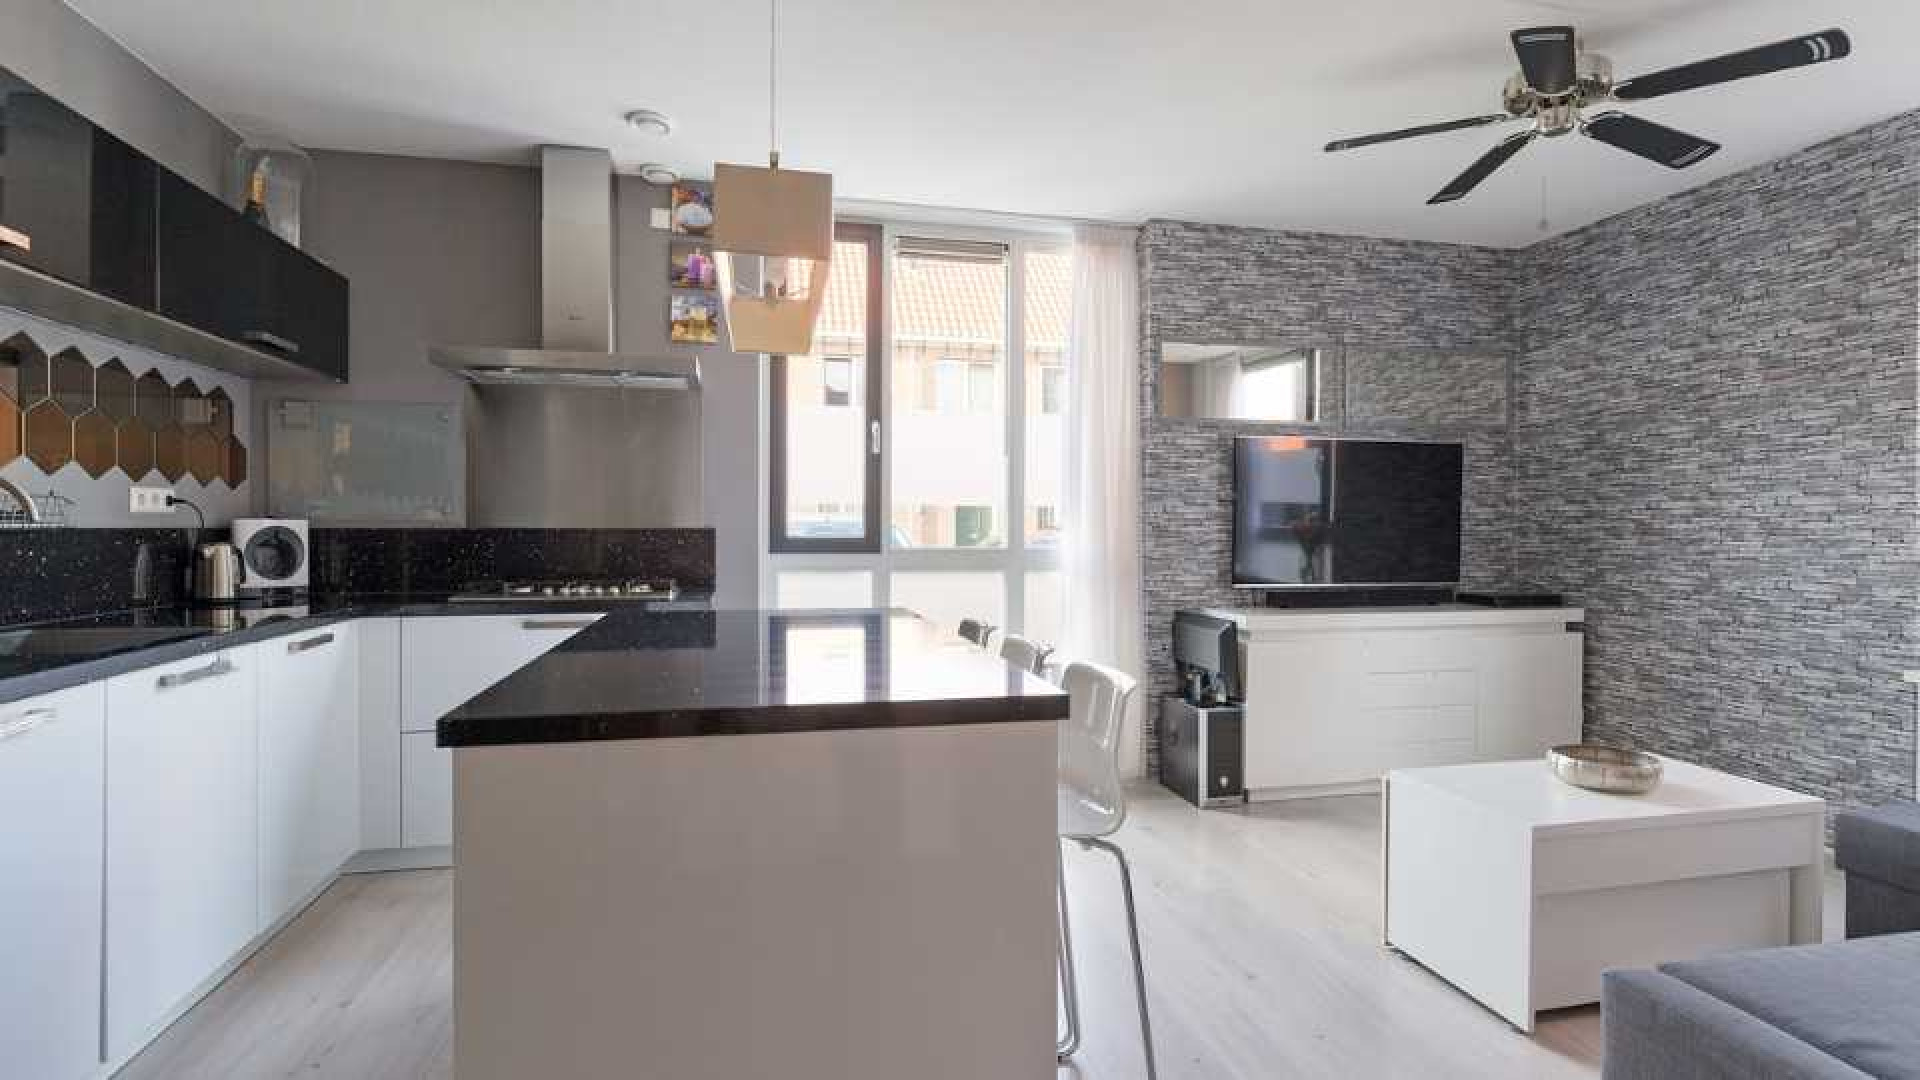 Dave Roelvink koopt eigen appartement in Landsmeer. Zie foto's 4